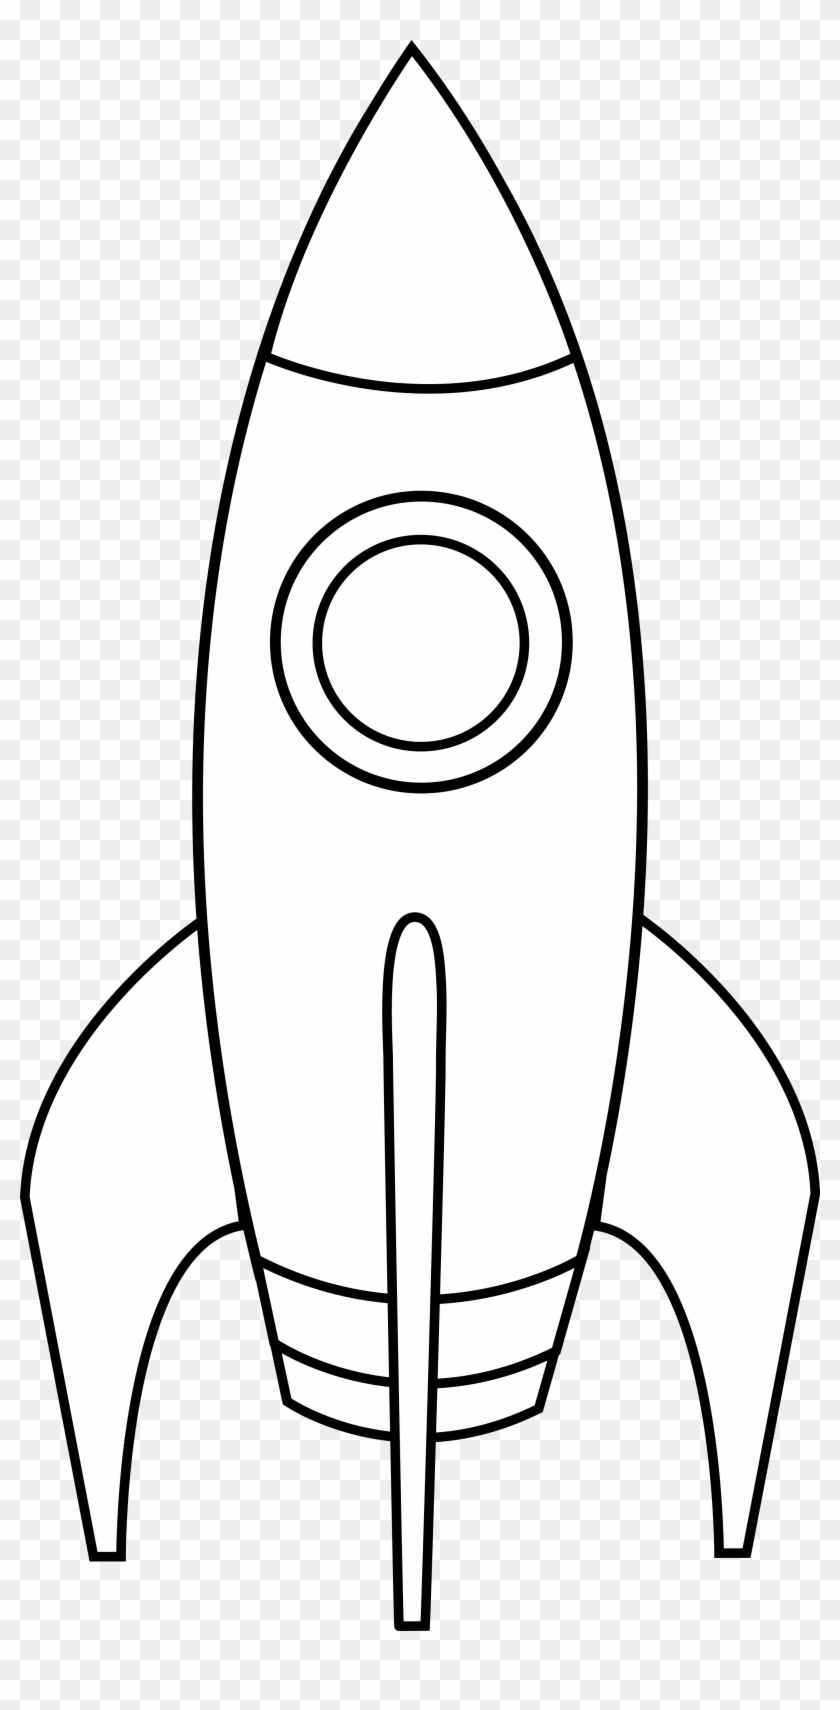 Rocket Spacecraft Black And White Clip Art - Rocket Spacecraft Black And White Clip Art #417229